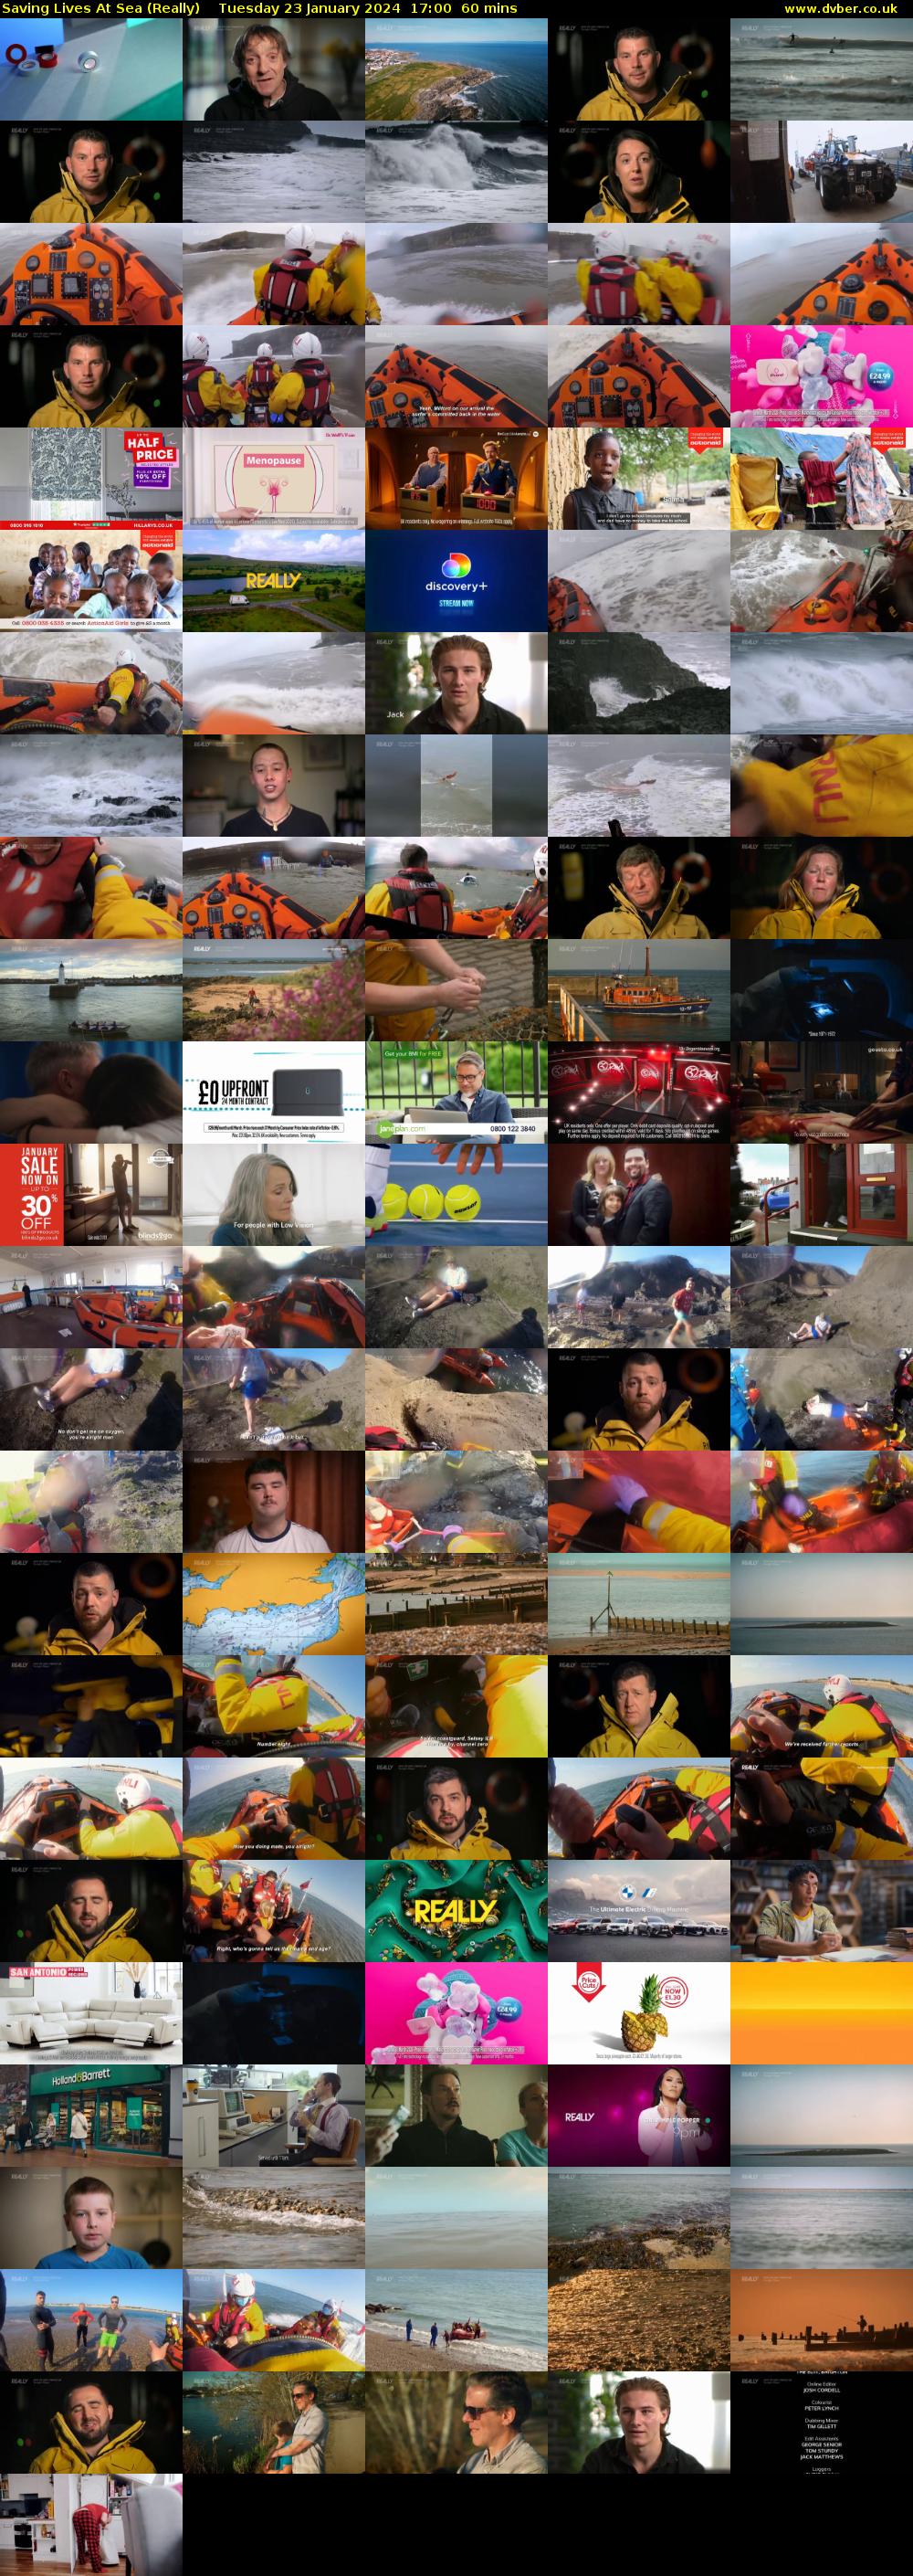 Saving Lives At Sea (Really) Tuesday 23 January 2024 17:00 - 18:00